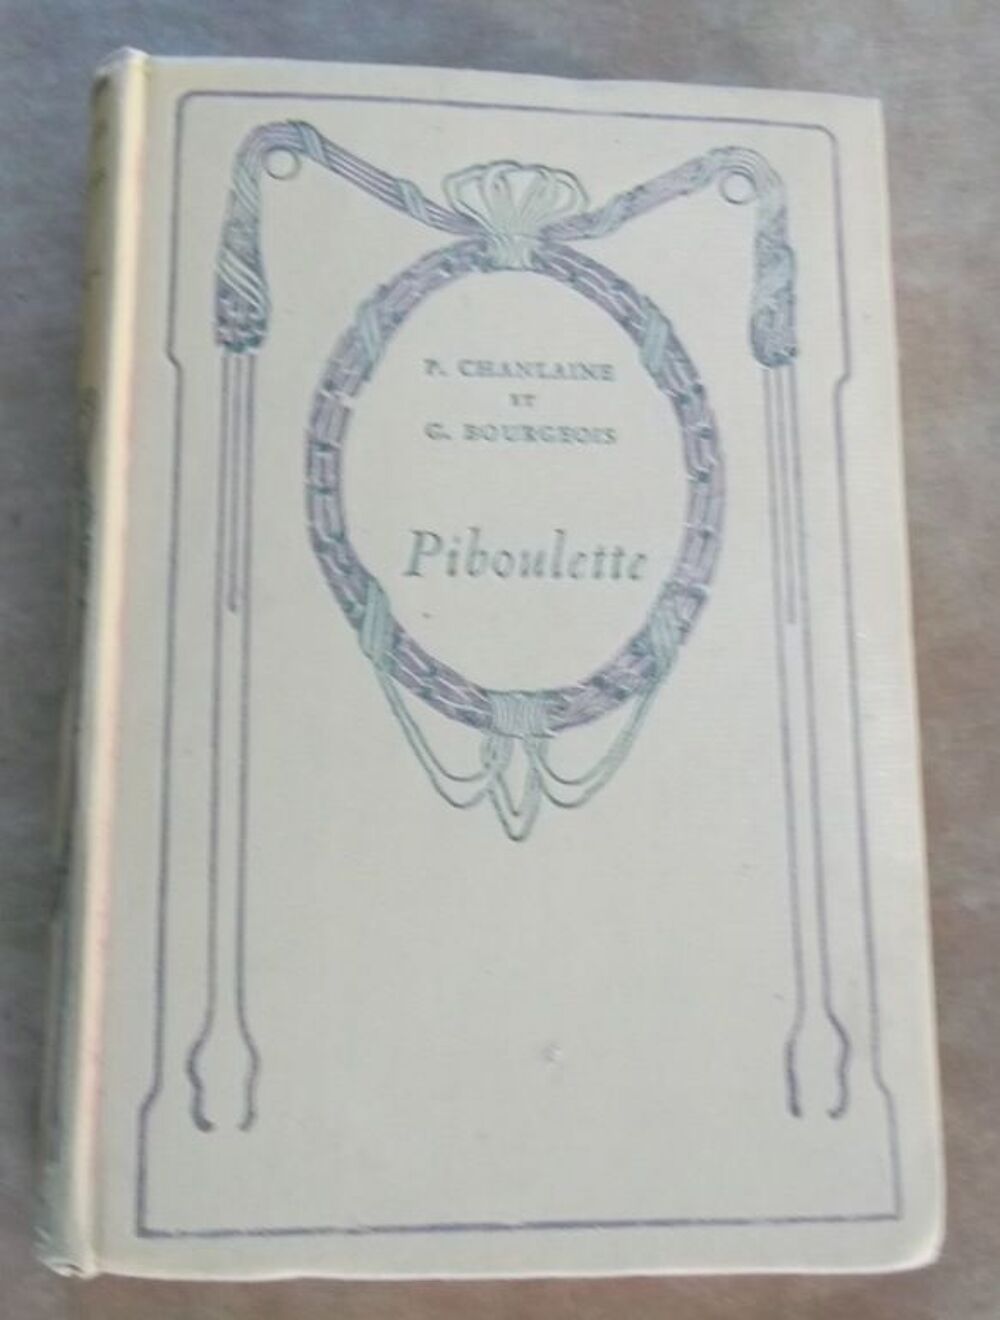 CHANLAINE et BOURGEOIS, PIBOULETTE, roman, Nelson 1936 Livres et BD